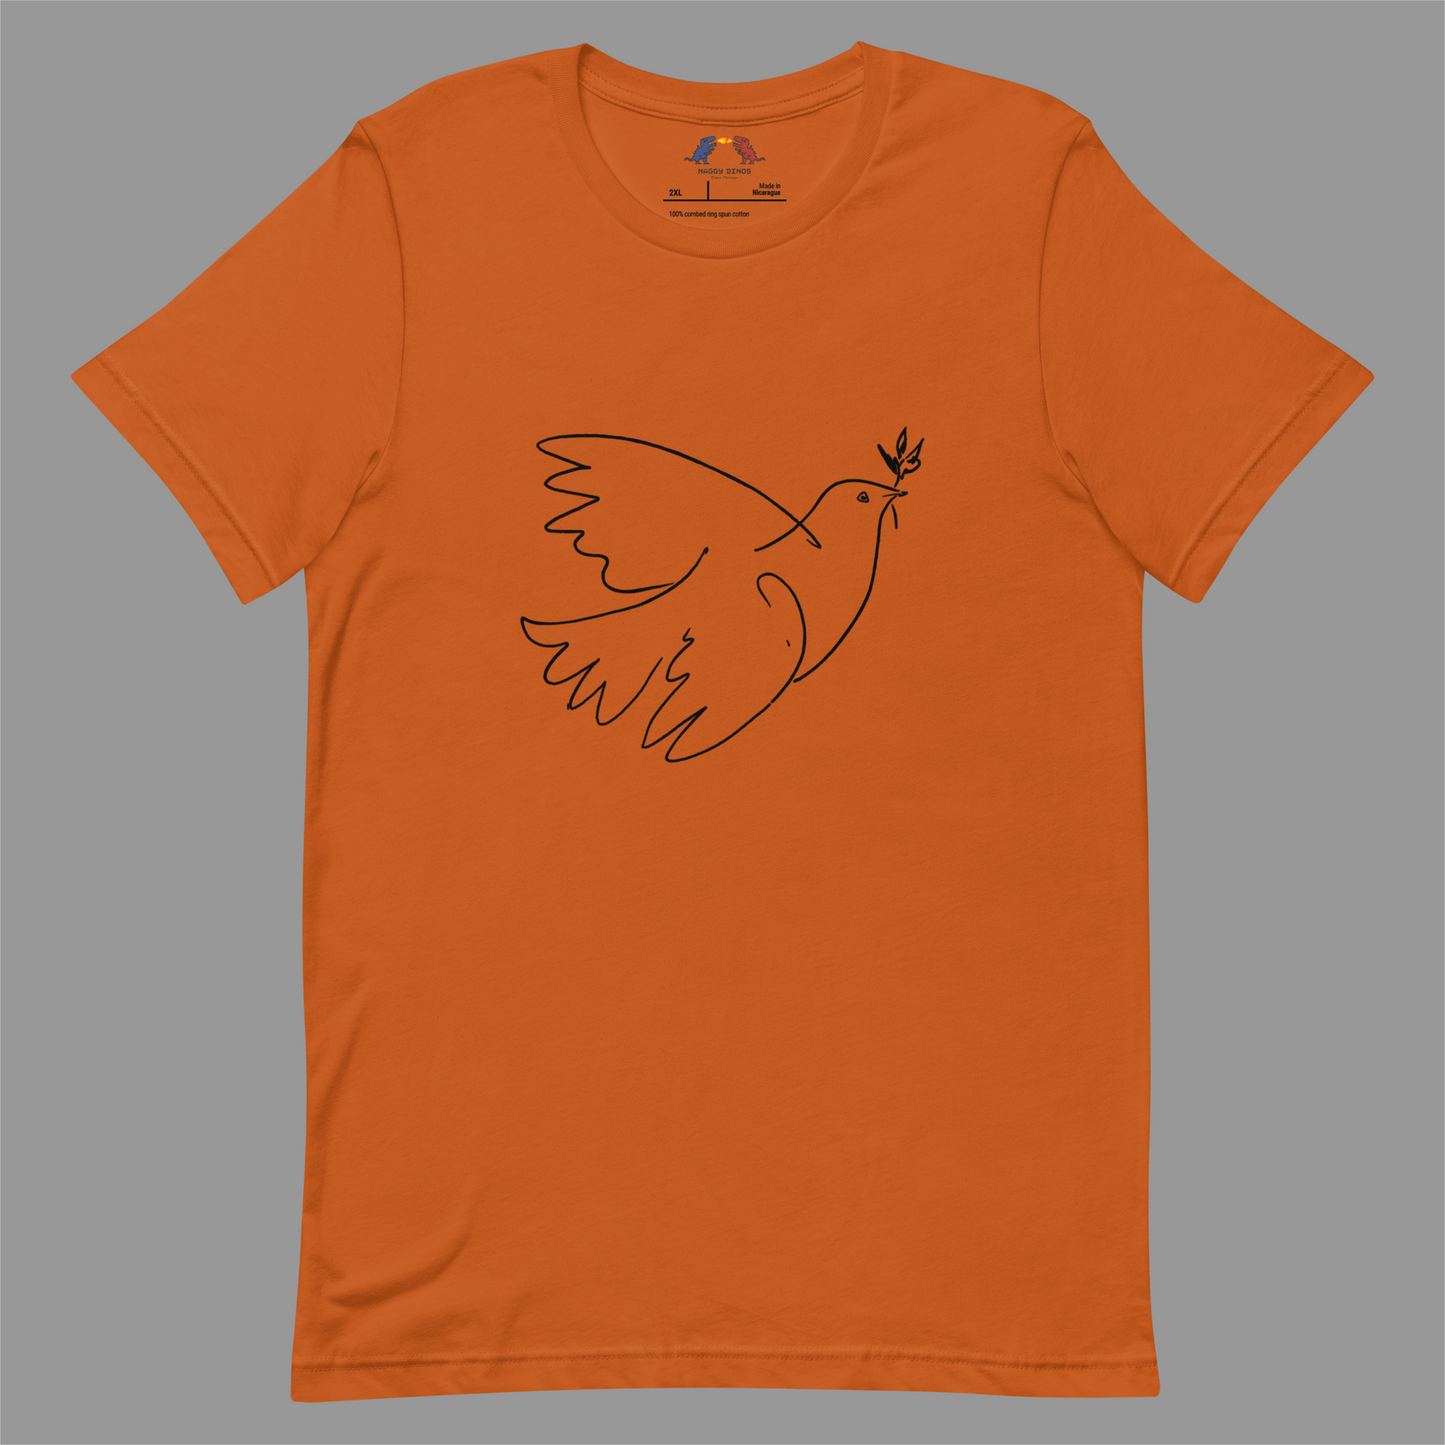 La paix - Unisex t-shirt